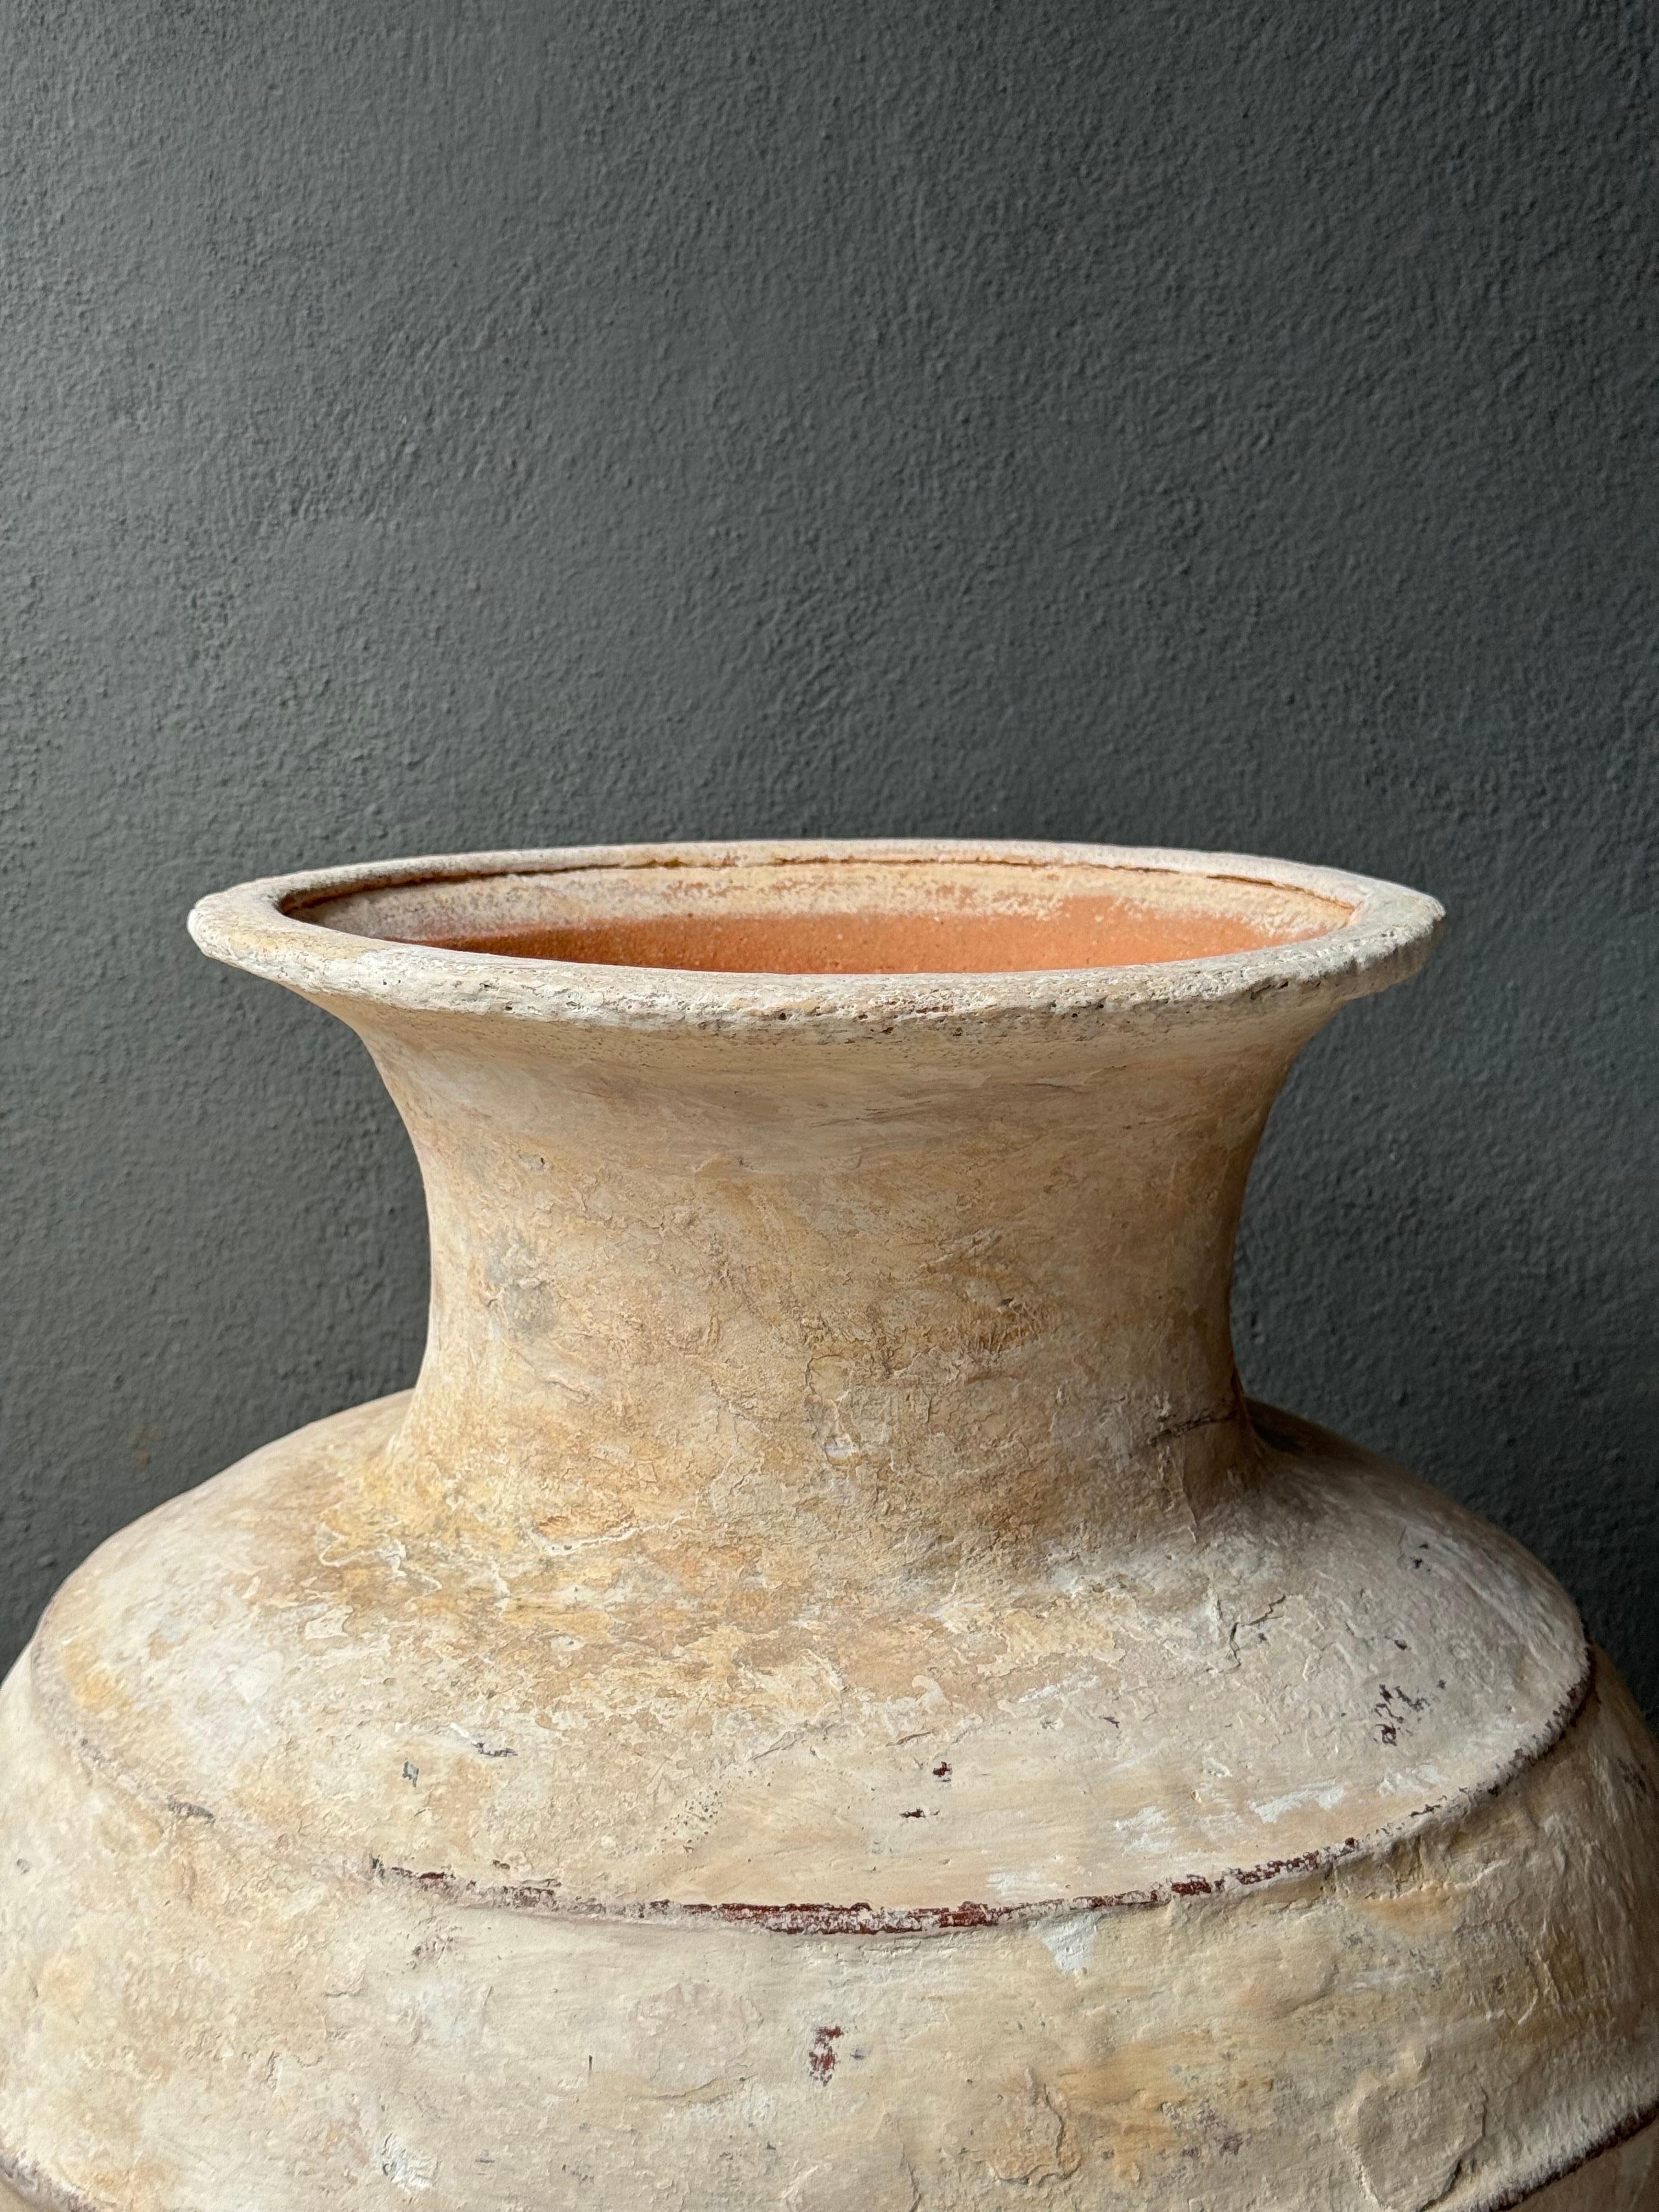 Vase à eau en céramique du Yucatan central, Mexique, début du 20e siècle. Les communautés mayas utilisaient généralement du plâtre blanc sur leurs jarres en terre cuite afin de maintenir l'eau à une température plus fraîche. Cette technique permet